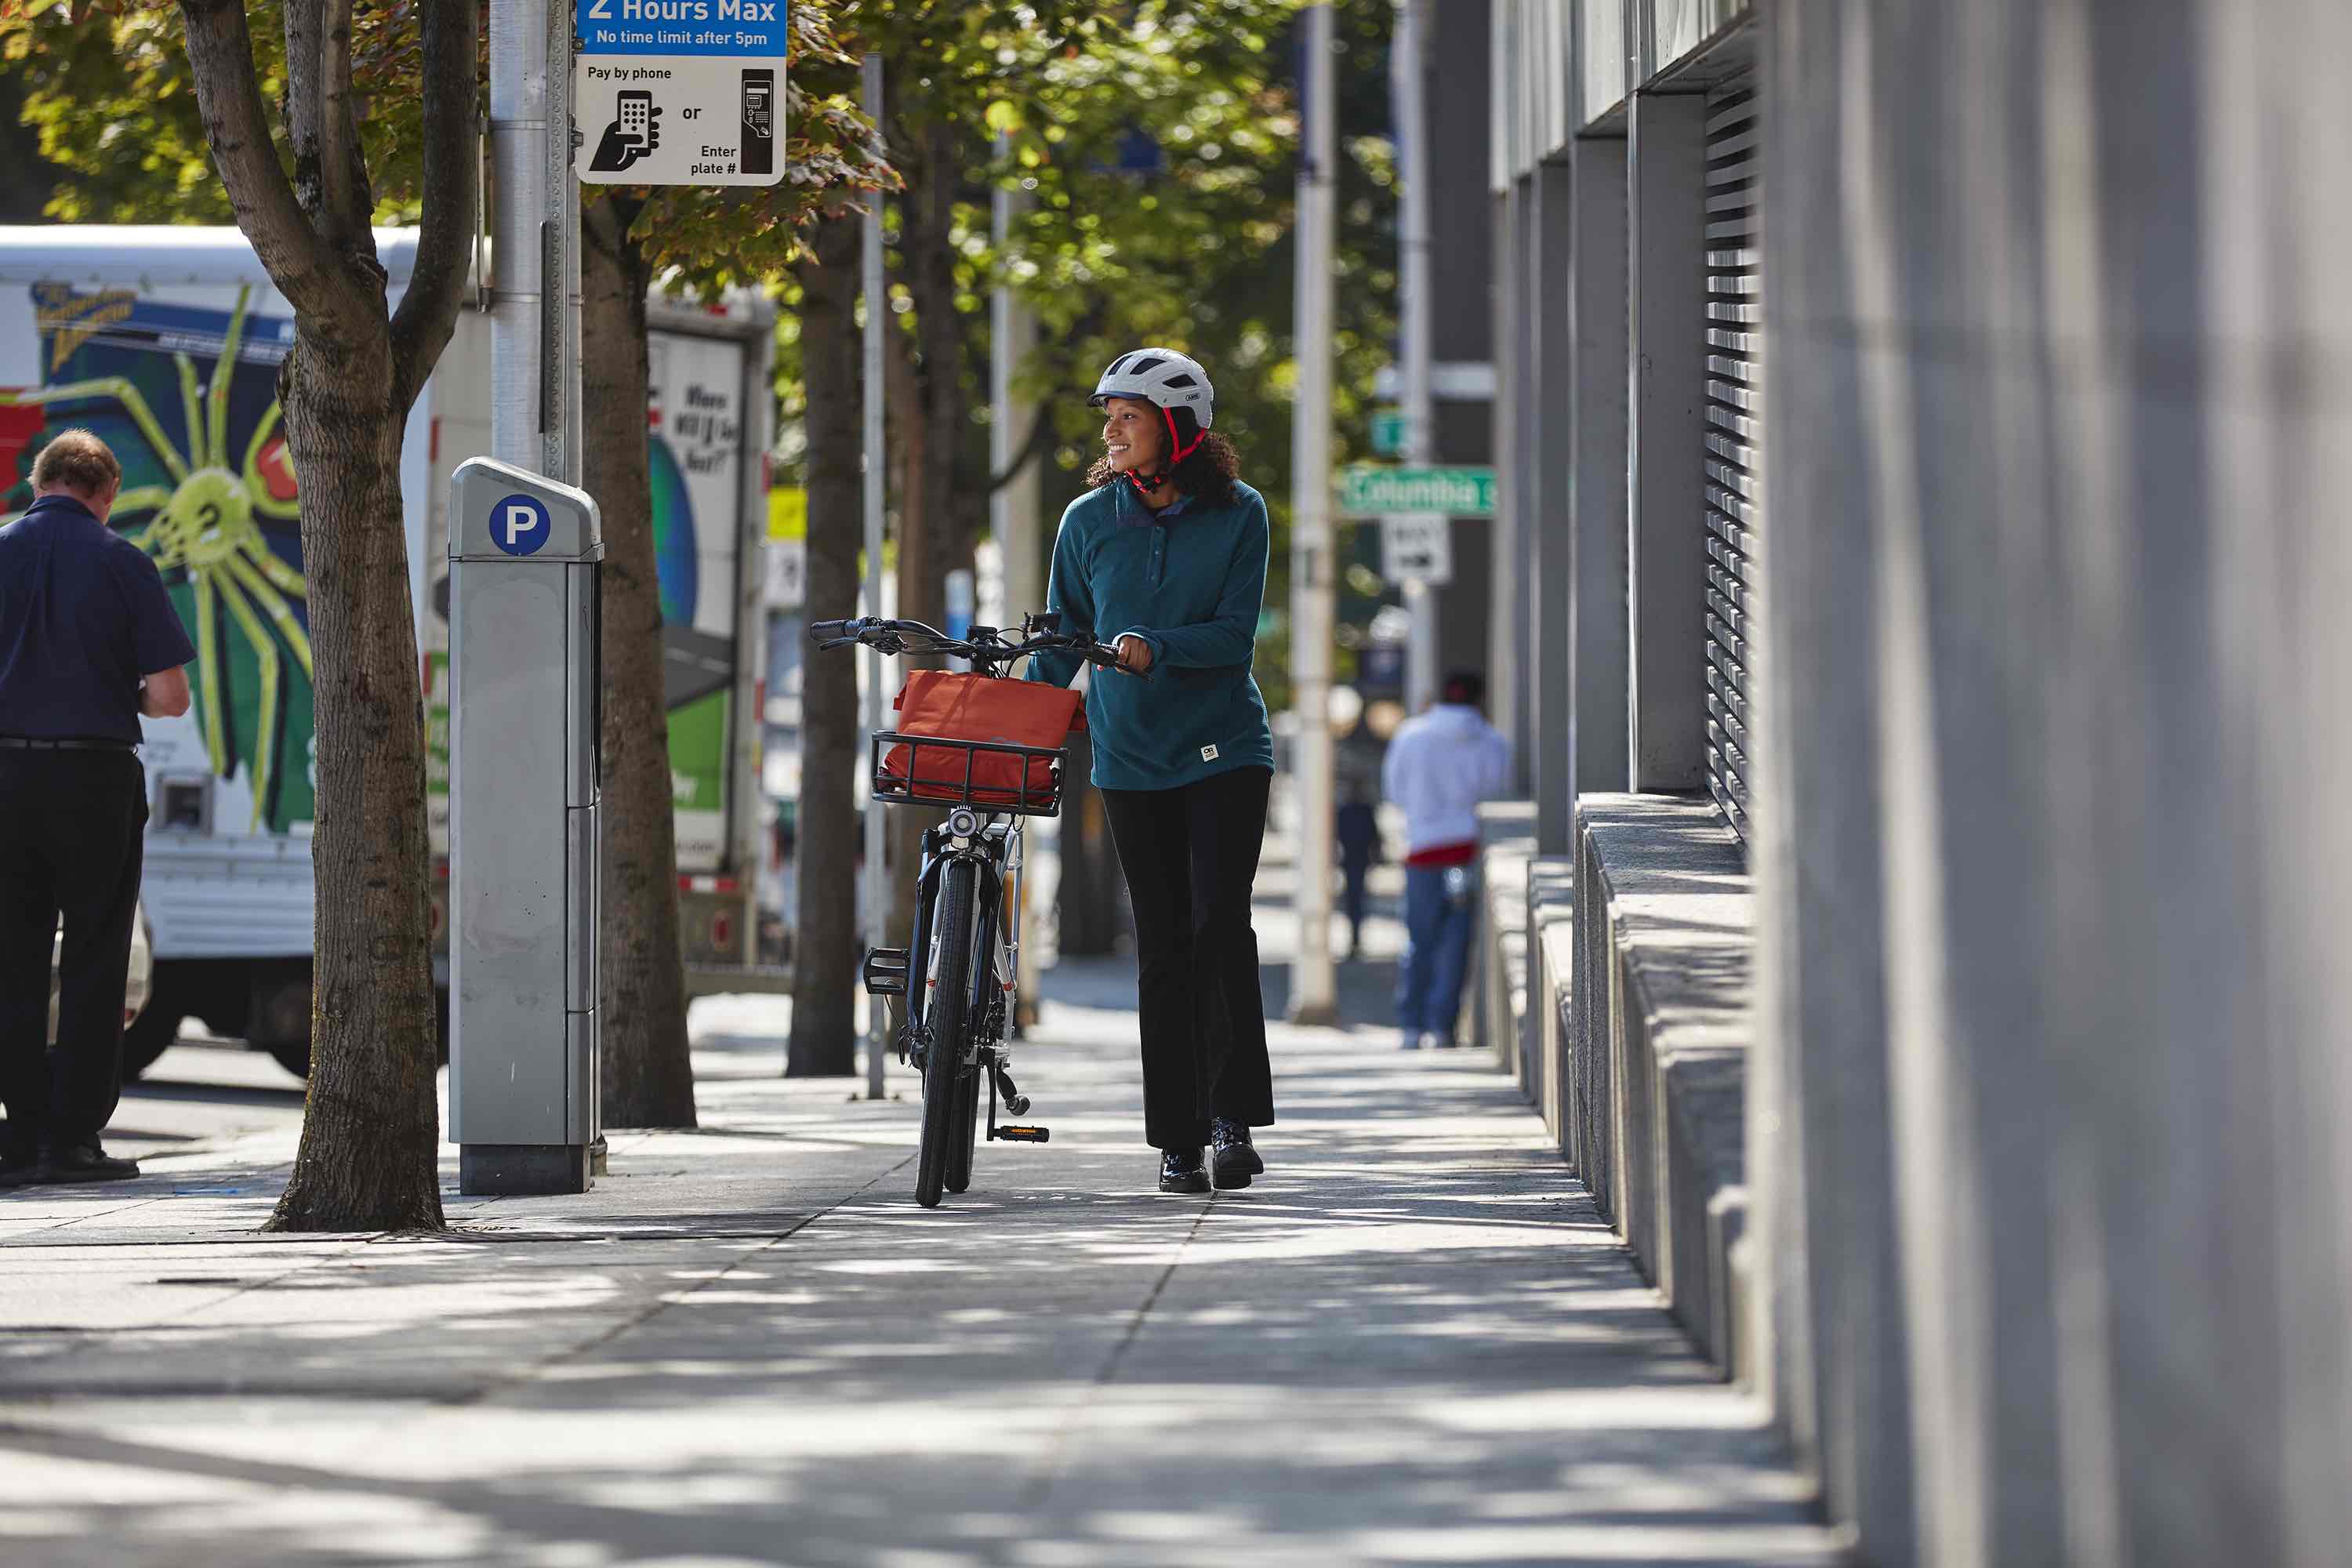 A woman walks an electric commuter bike down a city street.